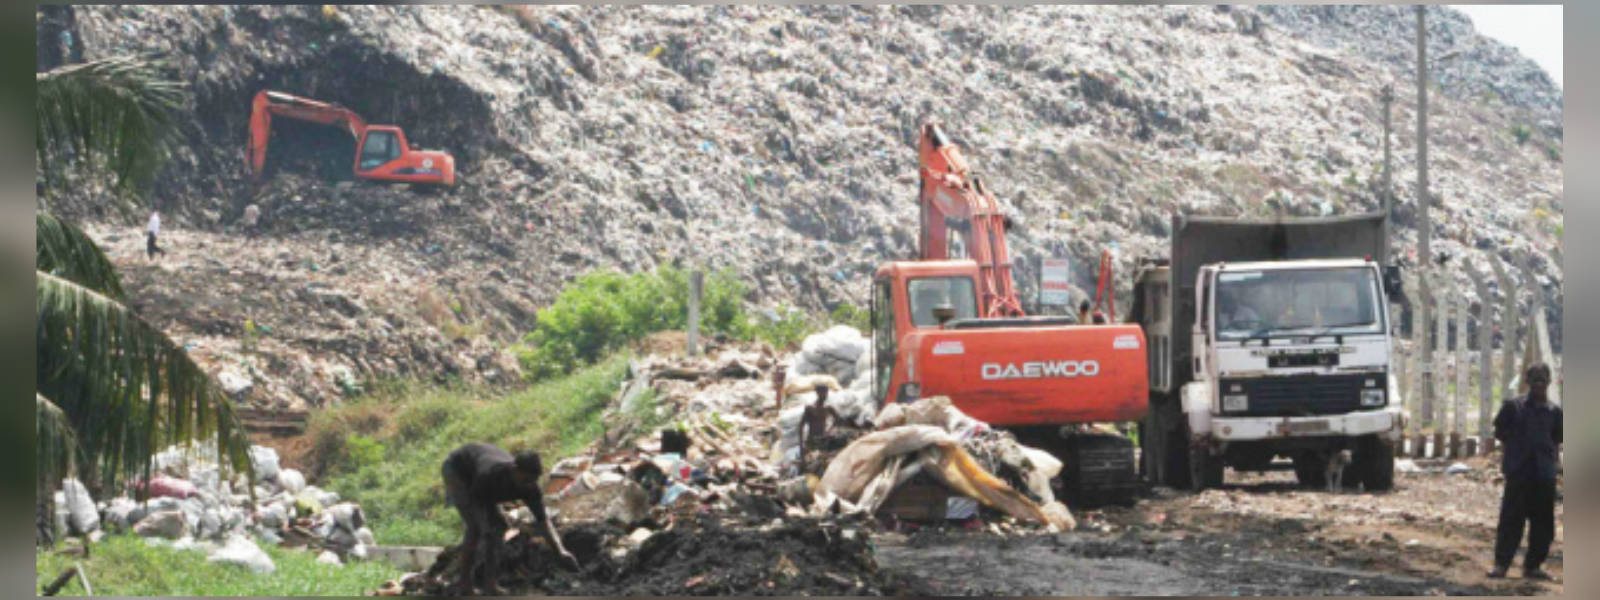 Kerawalapitiya garbage dump to be shut down